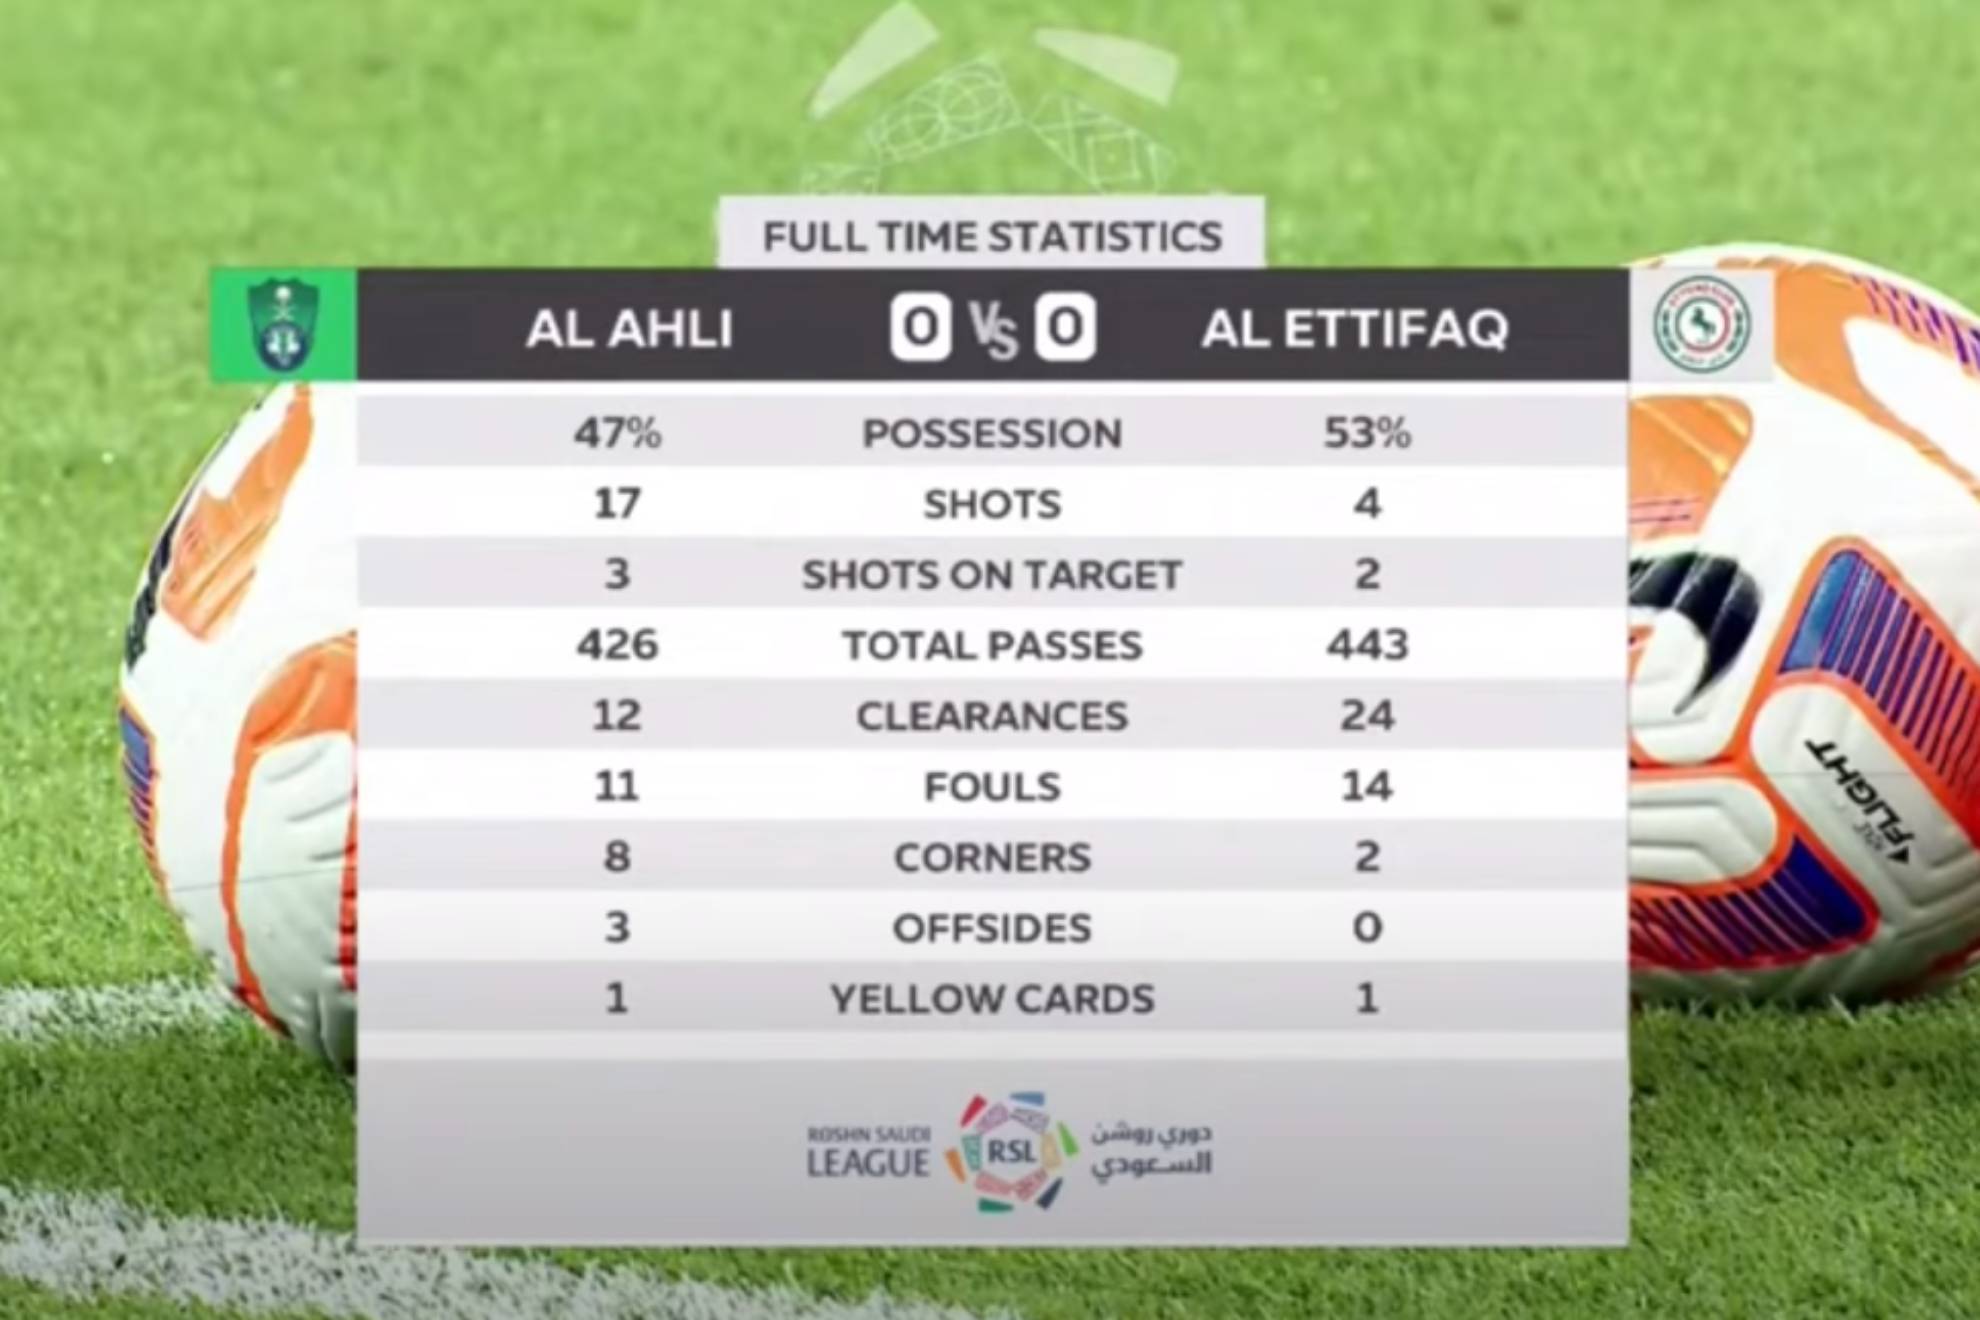 Al Ahli vs Al Ettifaq - Ver online y gratis el partido de Gabri Veiga